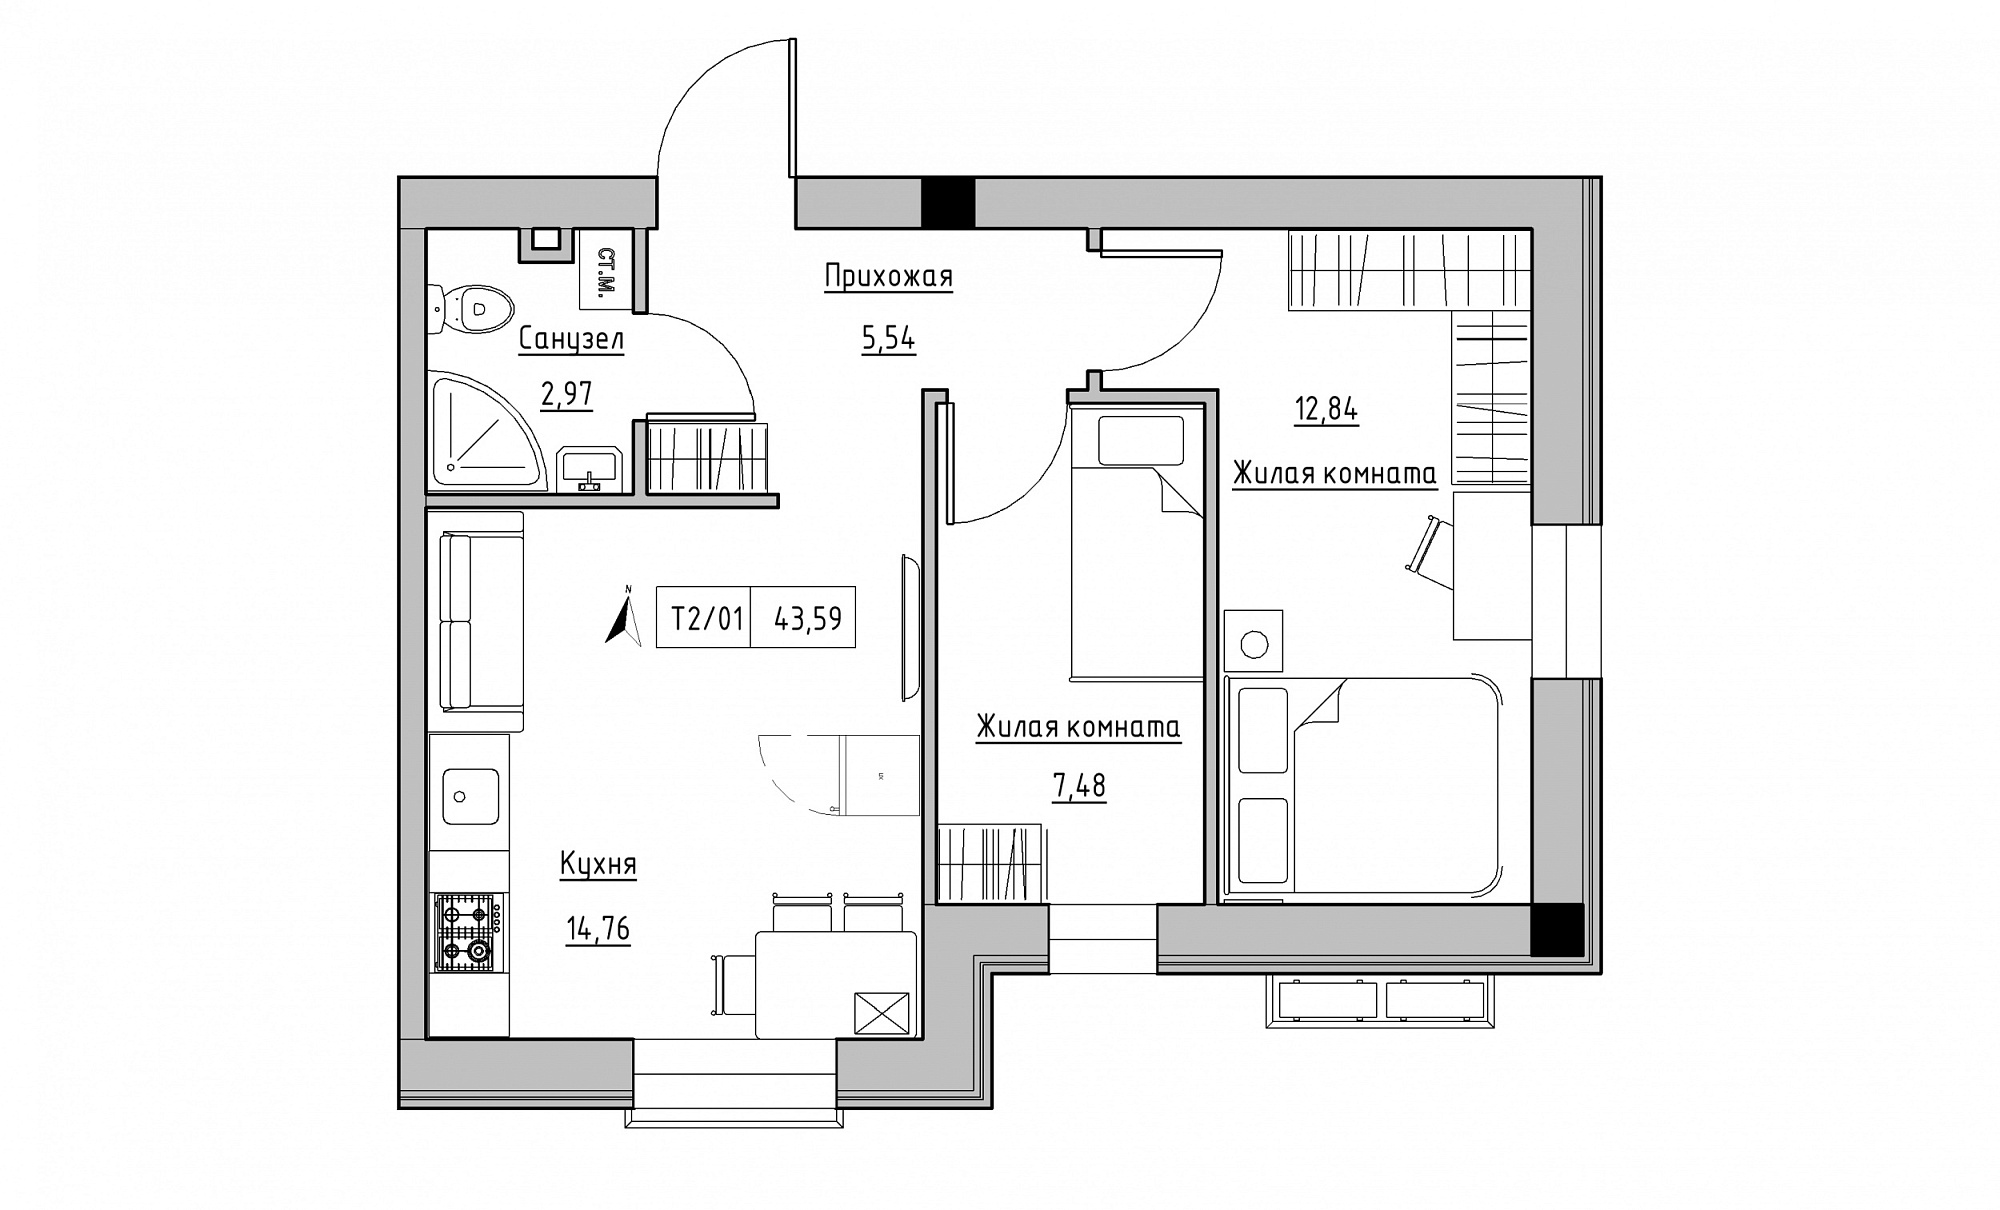 Планировка 2-к квартира площей 43.59м2, KS-015-01/0008.